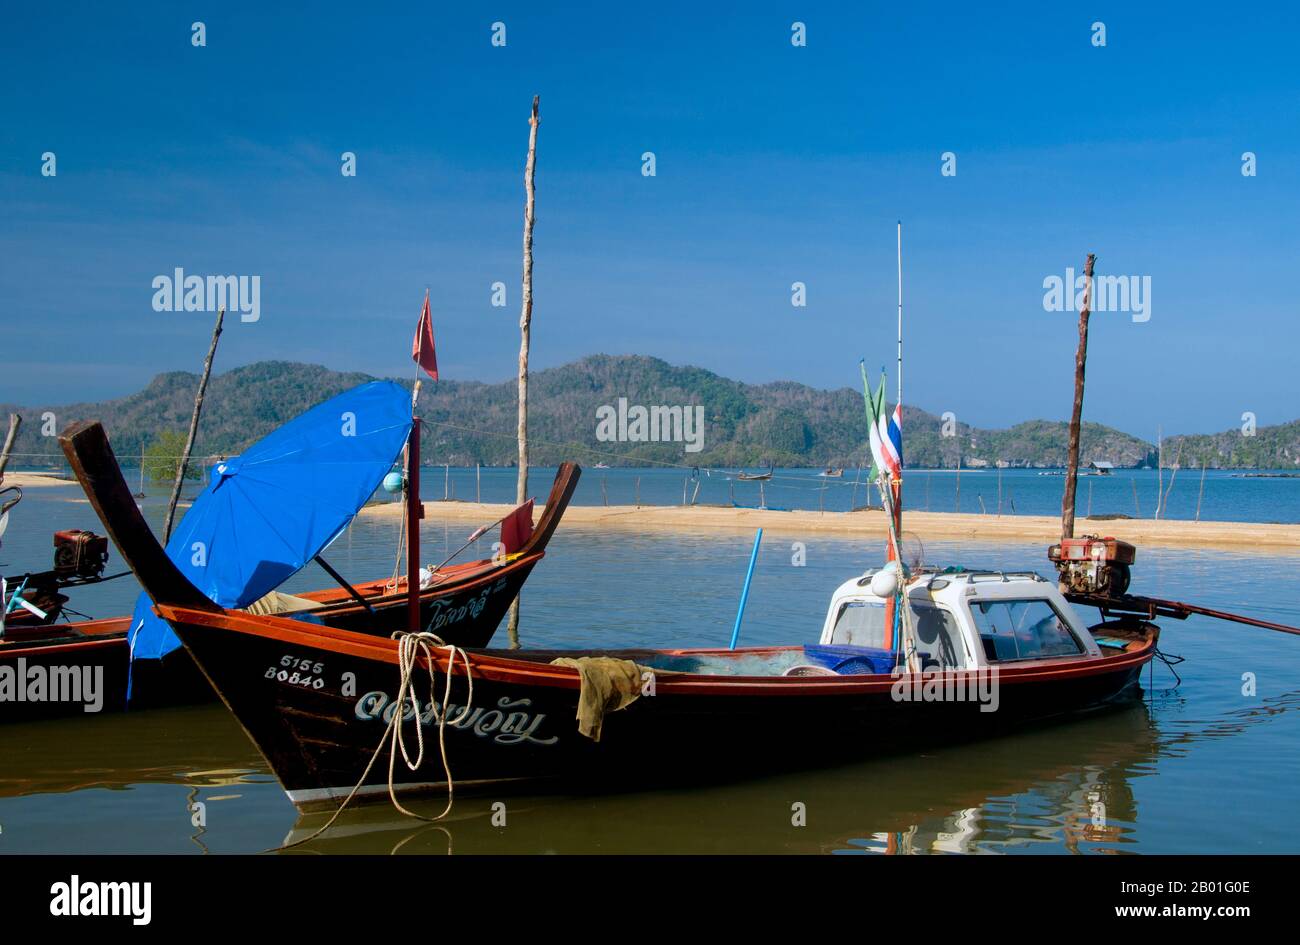 Tailandia: Barcos de pesca, Pak Bara. Pak Bara es una pequeña ciudad costera y pueblo de pescadores en el sur de Tailandia a unos 60km km (37 millas) al noroeste de la capital provincial de Satun. Sirve como punto de partida para visitar el Parque Nacional Marino Mu Ko Phetra y el Parque Nacional Marino Ko Tarutao. Foto de stock